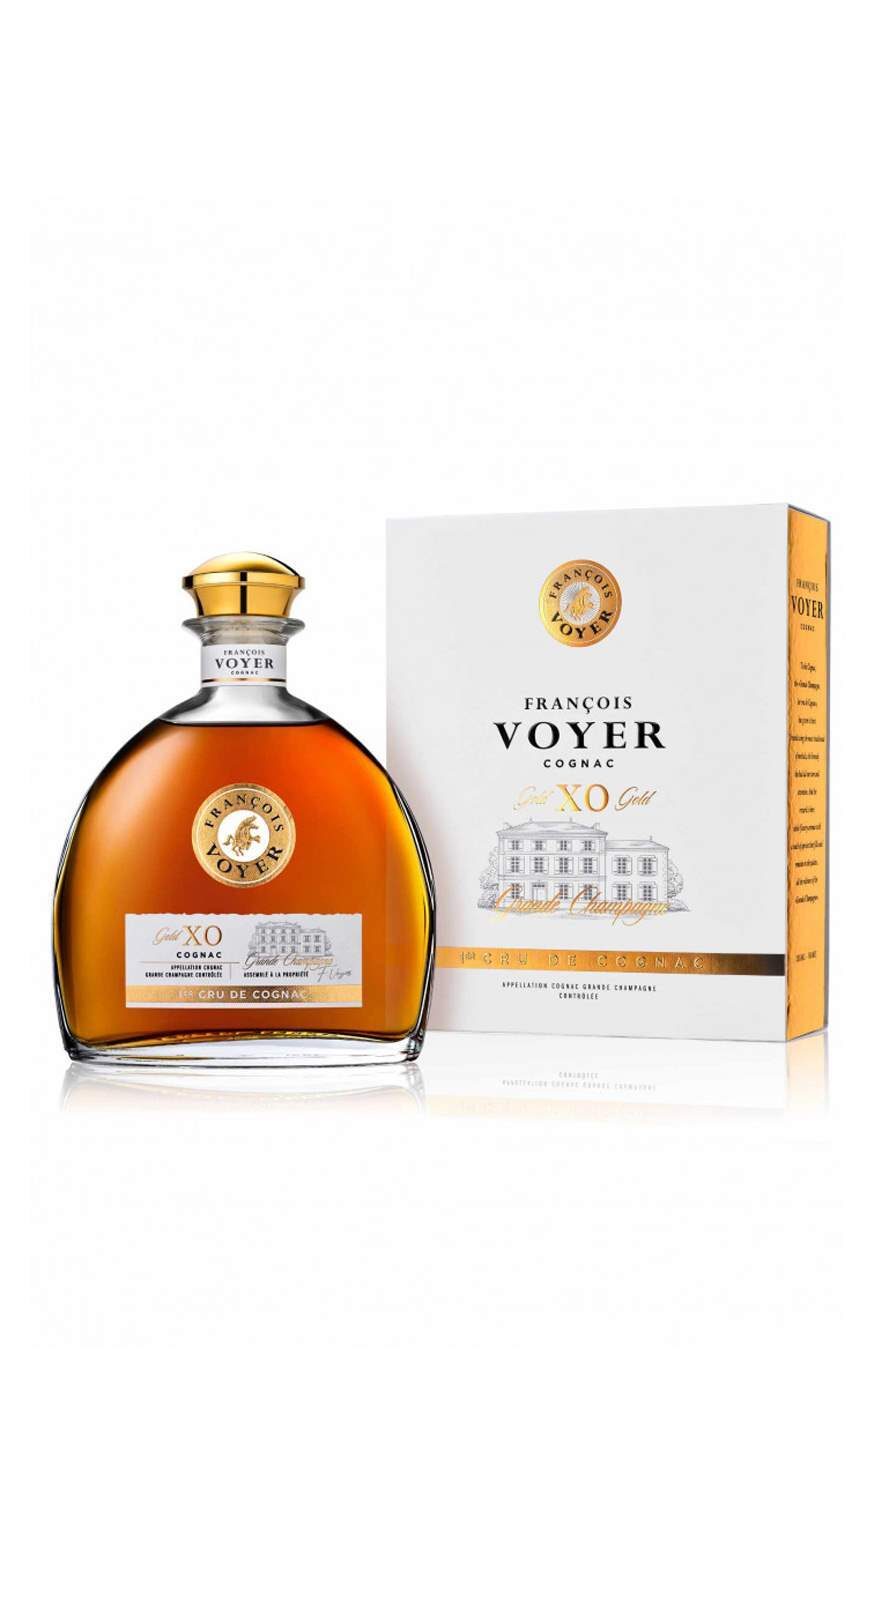 0027483_cognac-xo-gold-francois-voyer-070l-40-61